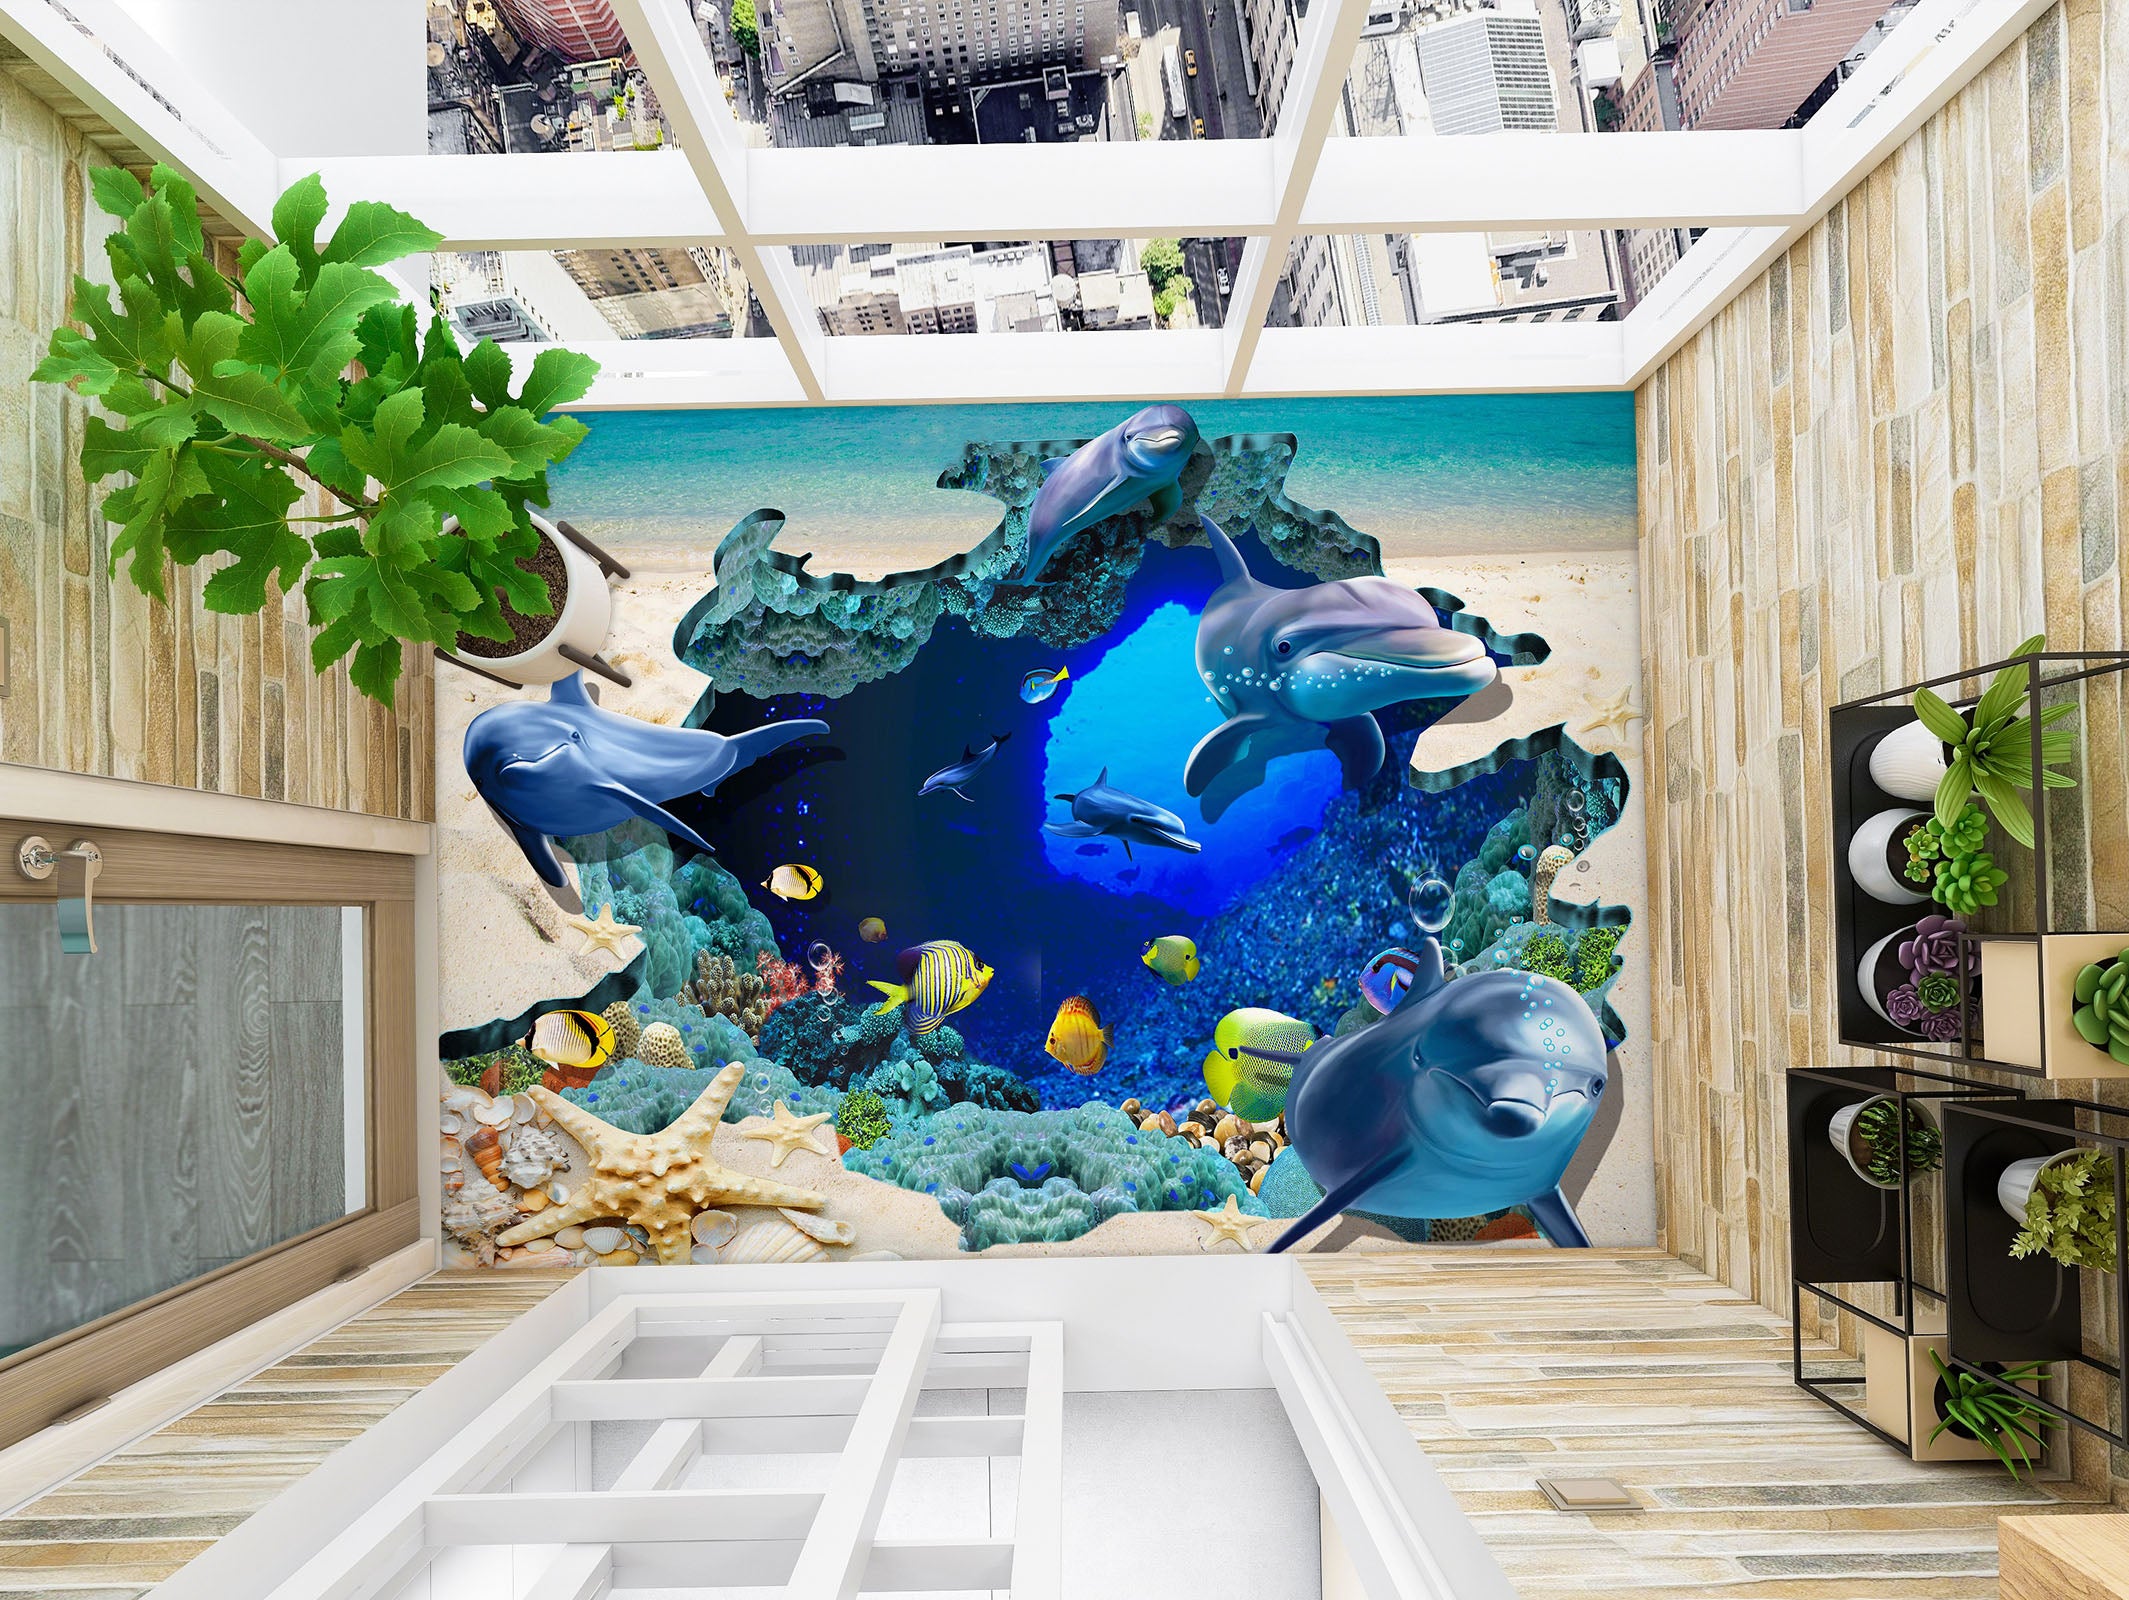 3D Dolphin Happiness 769 Floor Mural  Wallpaper Murals Rug & Mat Print Epoxy waterproof bath floor